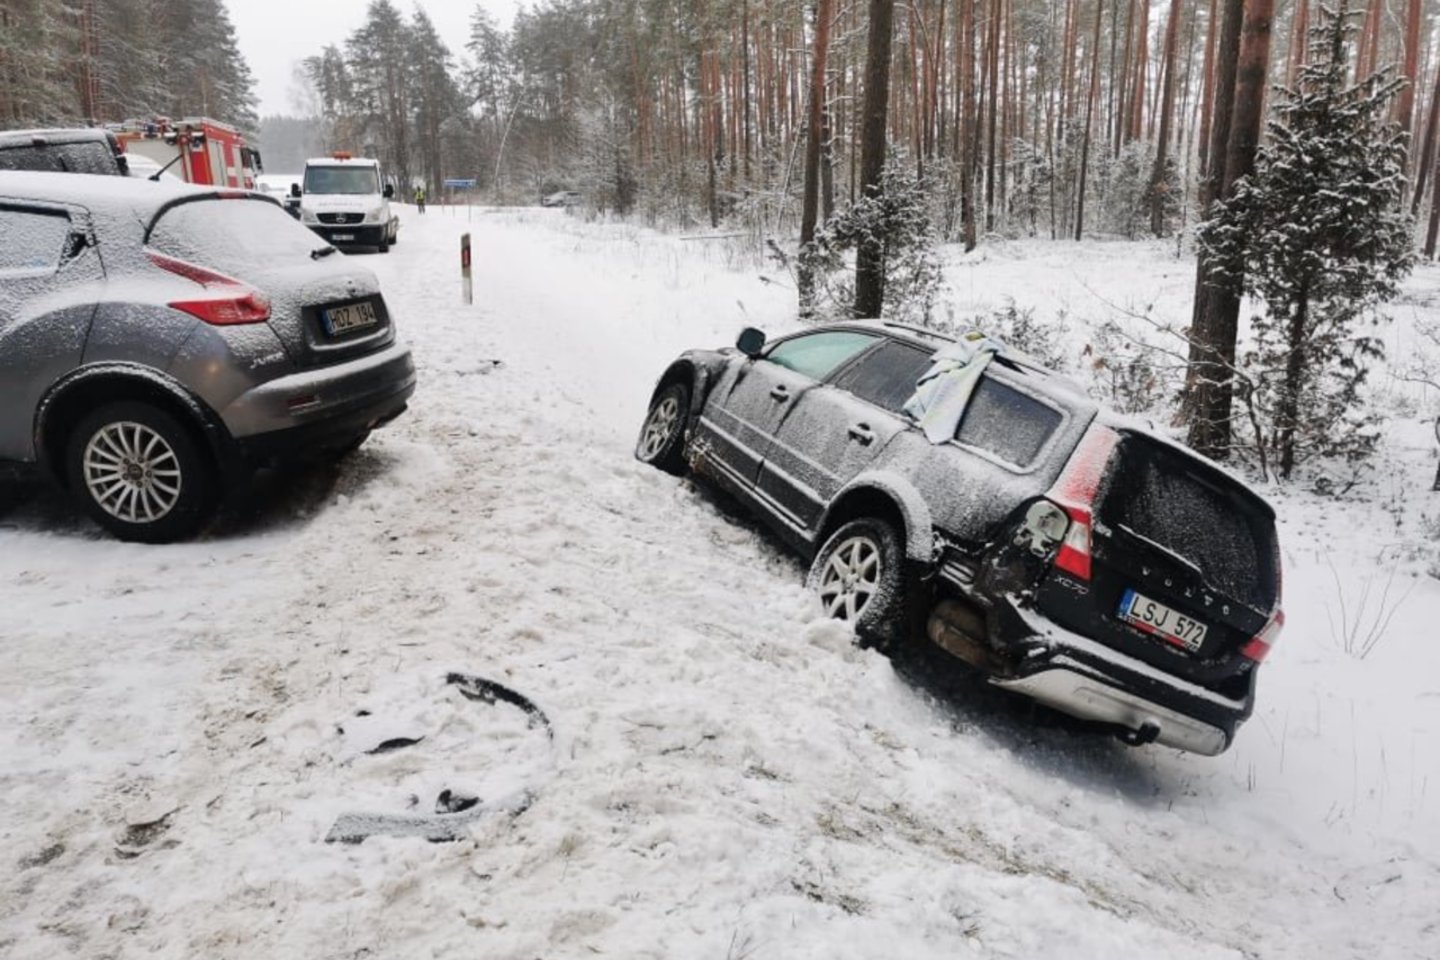  Švenčionių rajone per masinę avariją buvo sužeisti 4 žmonės, vienas prispaustas suniokotame automobilyje. 